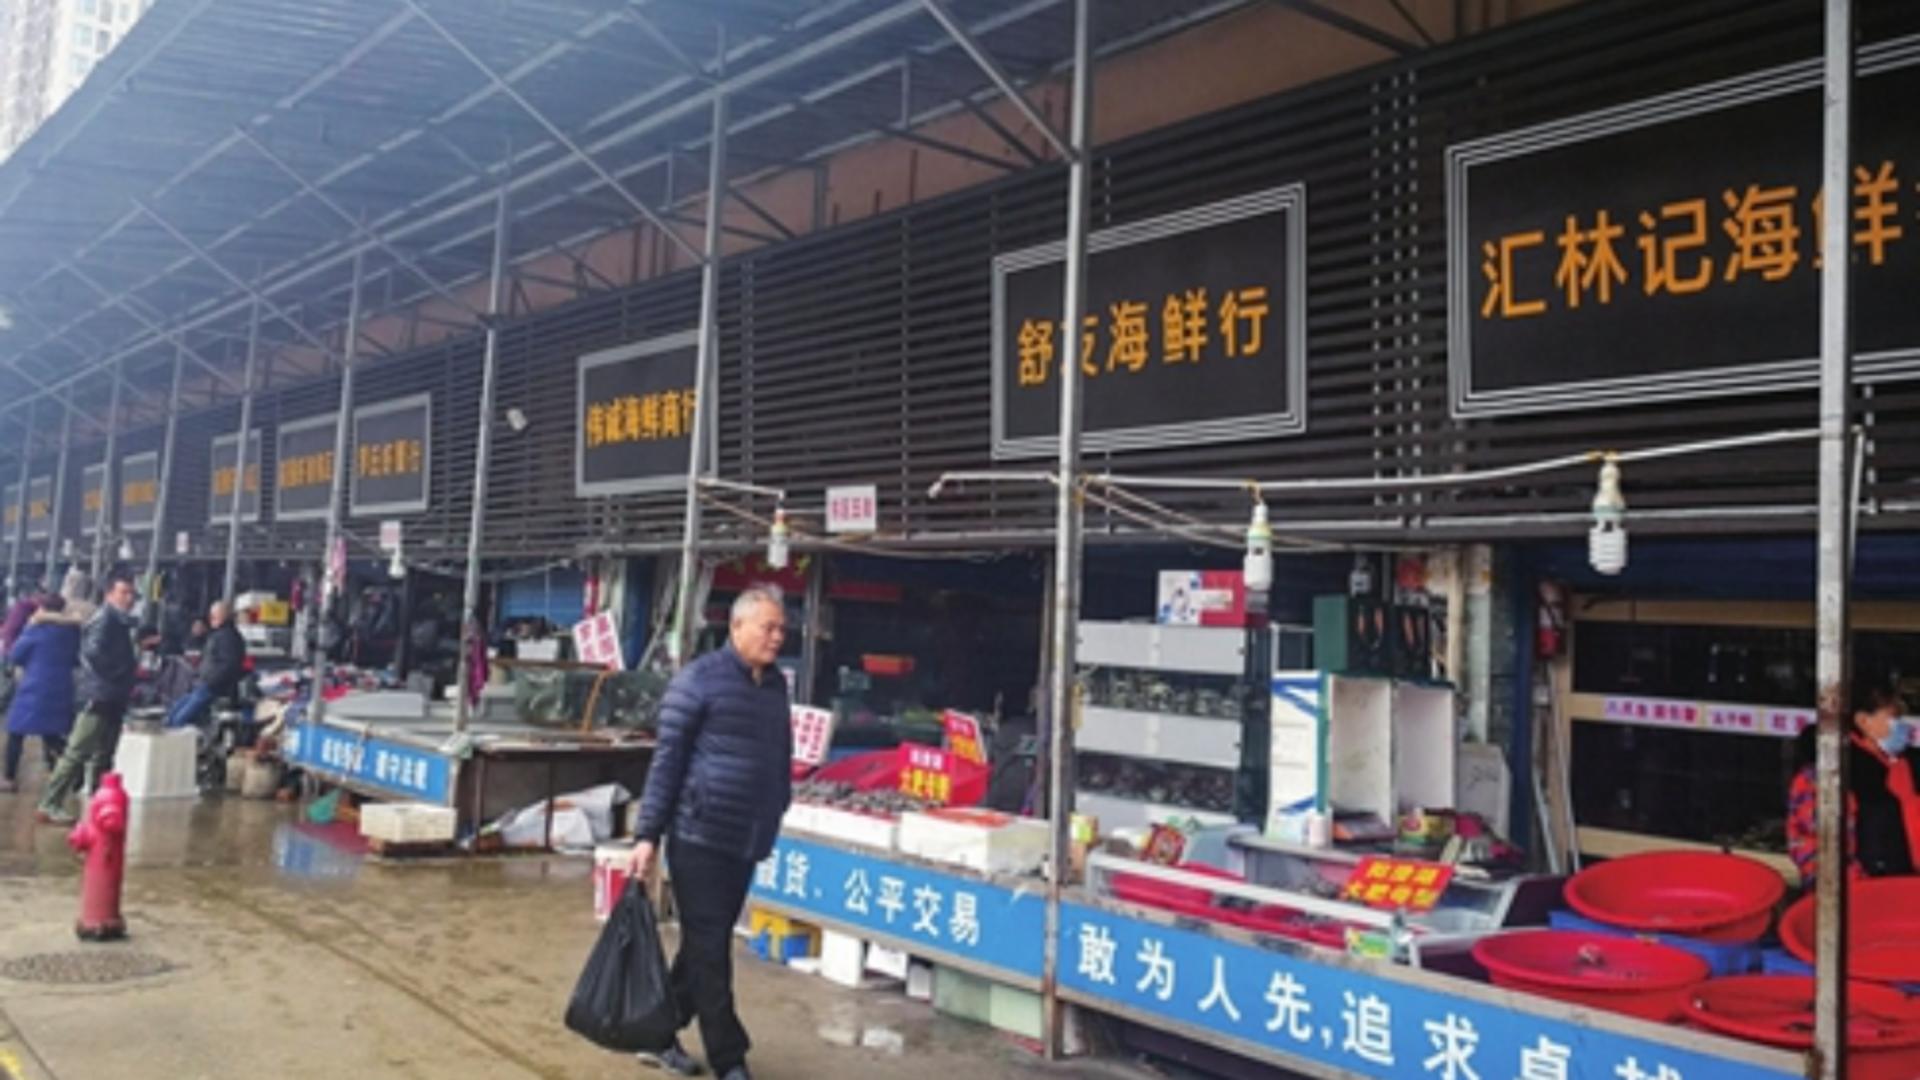 Celebra piață din Wuhan, epicentrul Covid. Foto/Profimedia